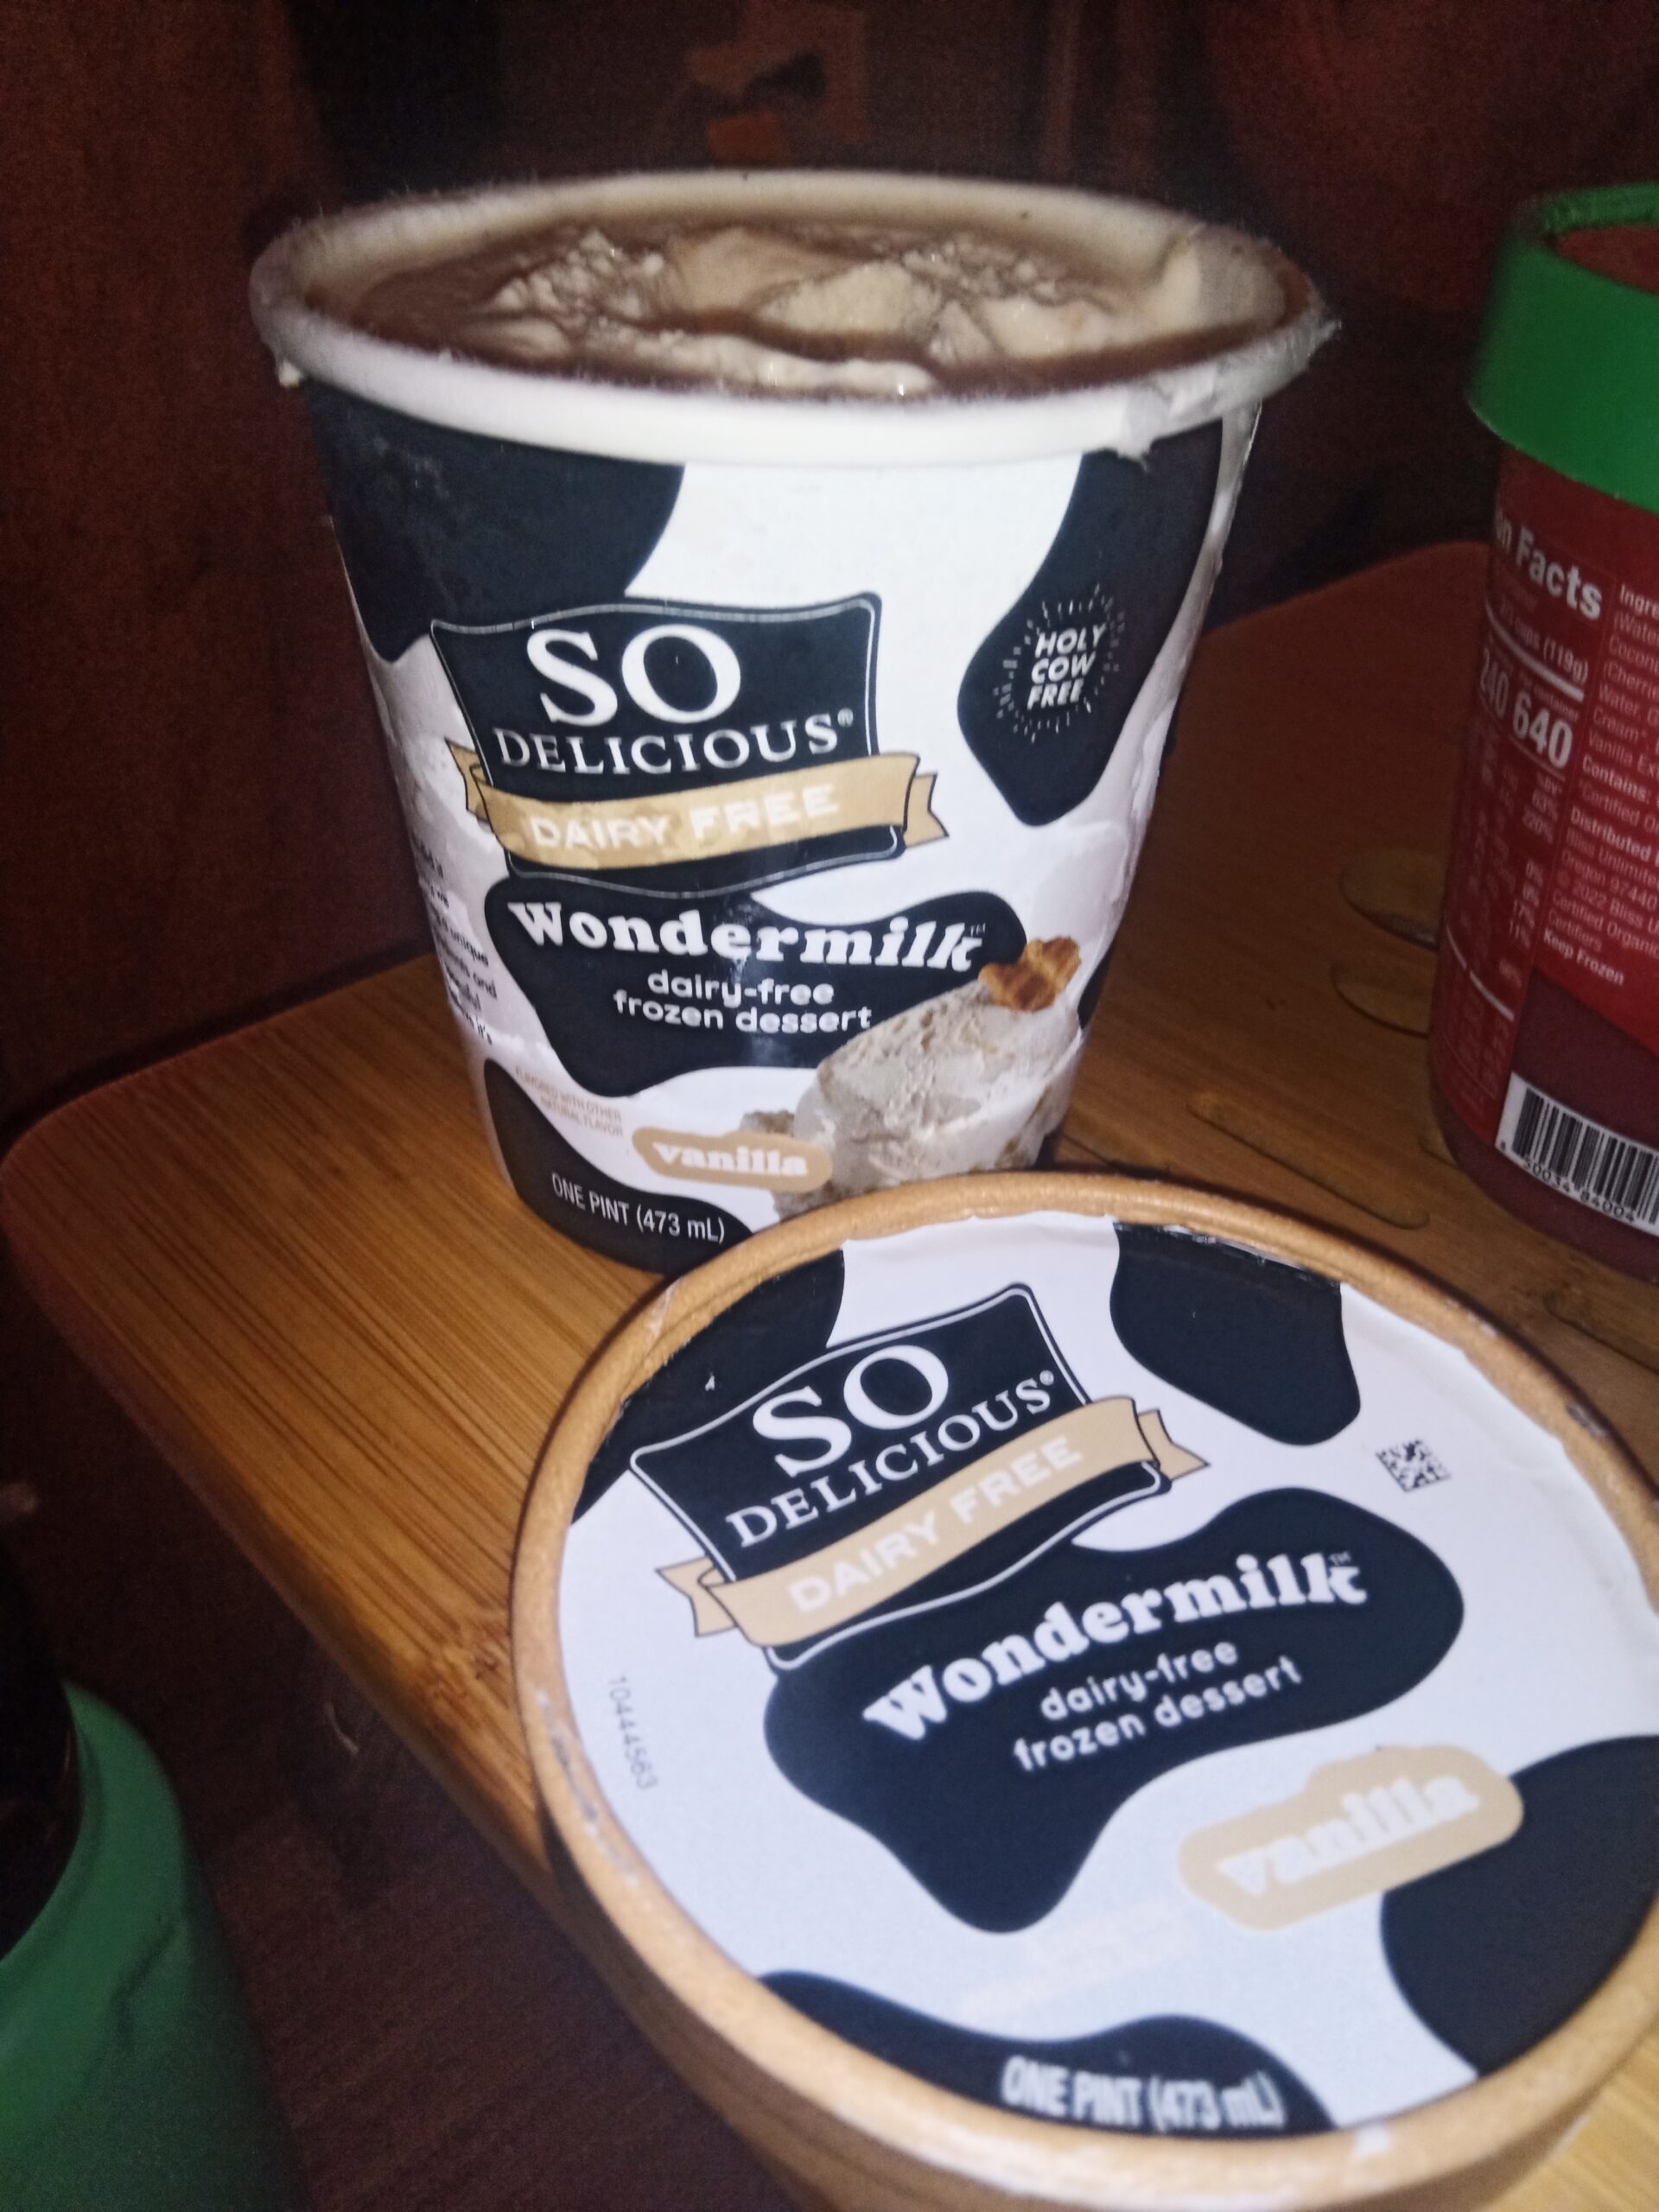 So Delicious “Wondermilk – Vanilla Ice Cream”: 2/5 uhhhhh